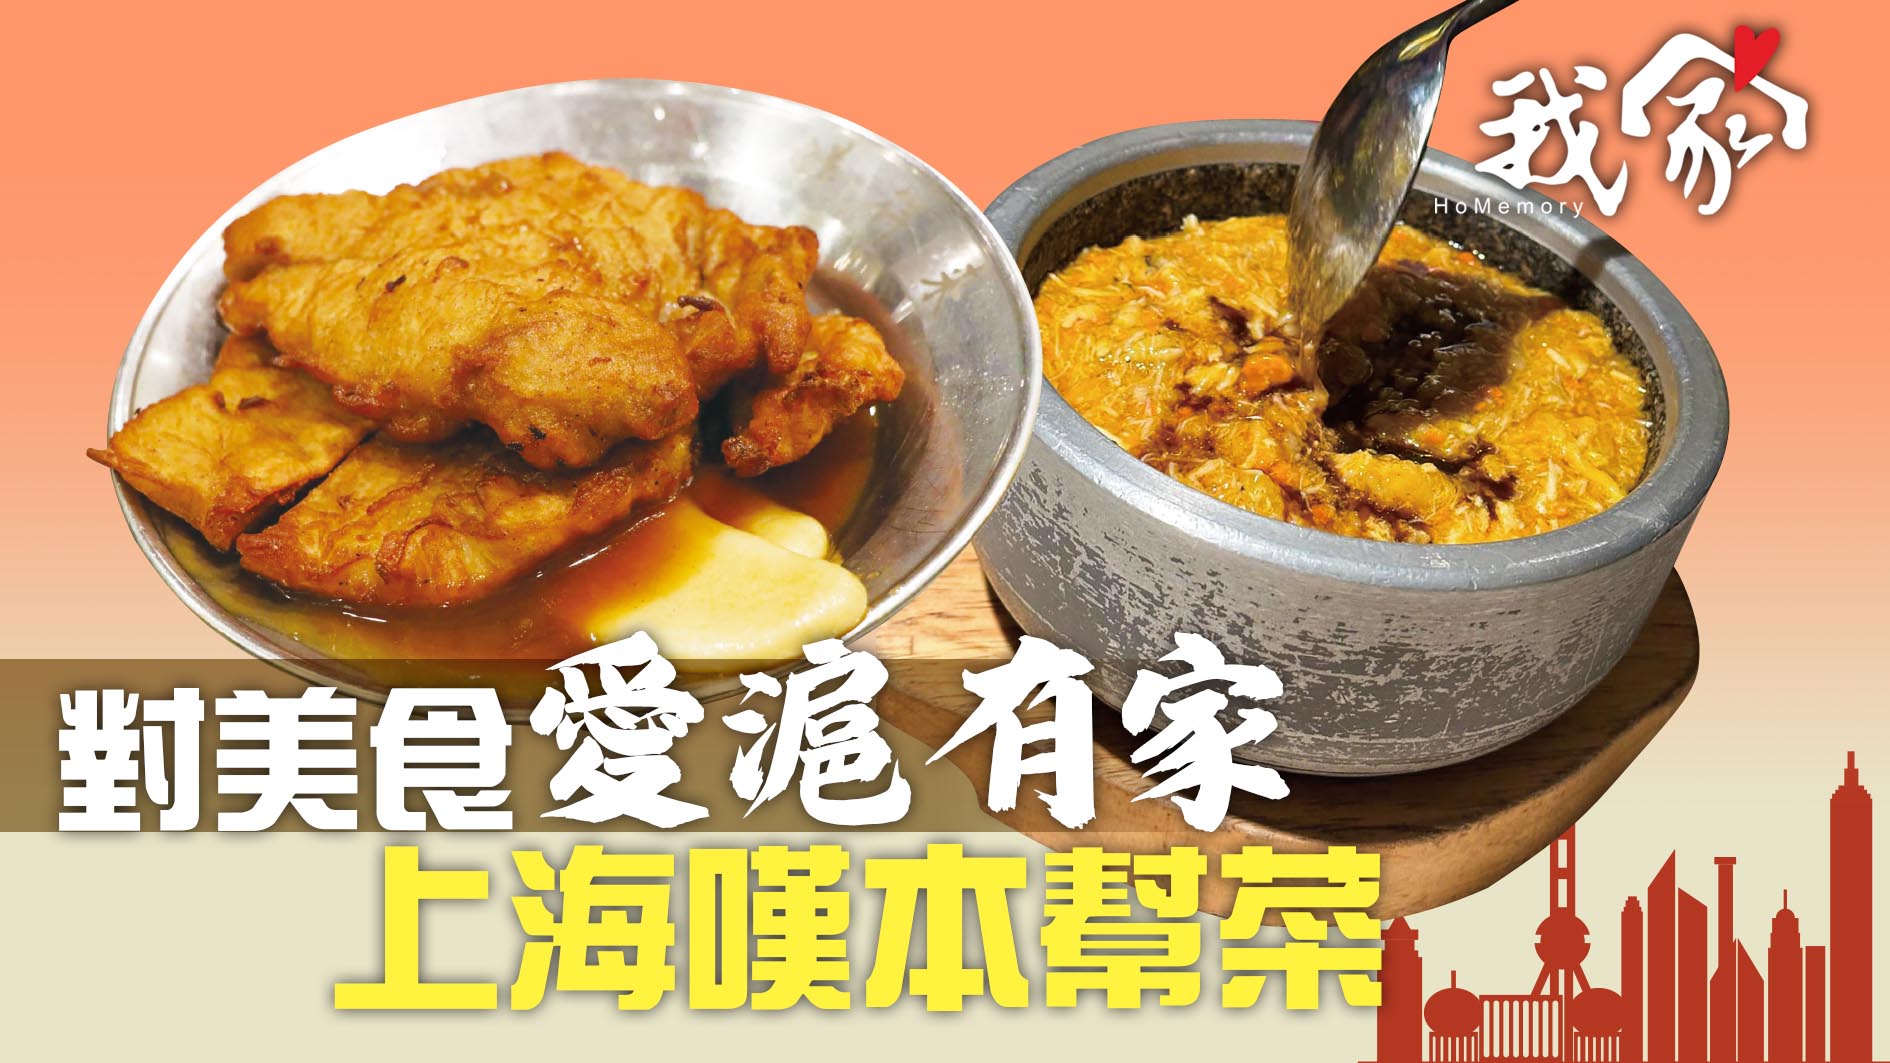 對美食「愛滬有家」  上海嘆本幫菜